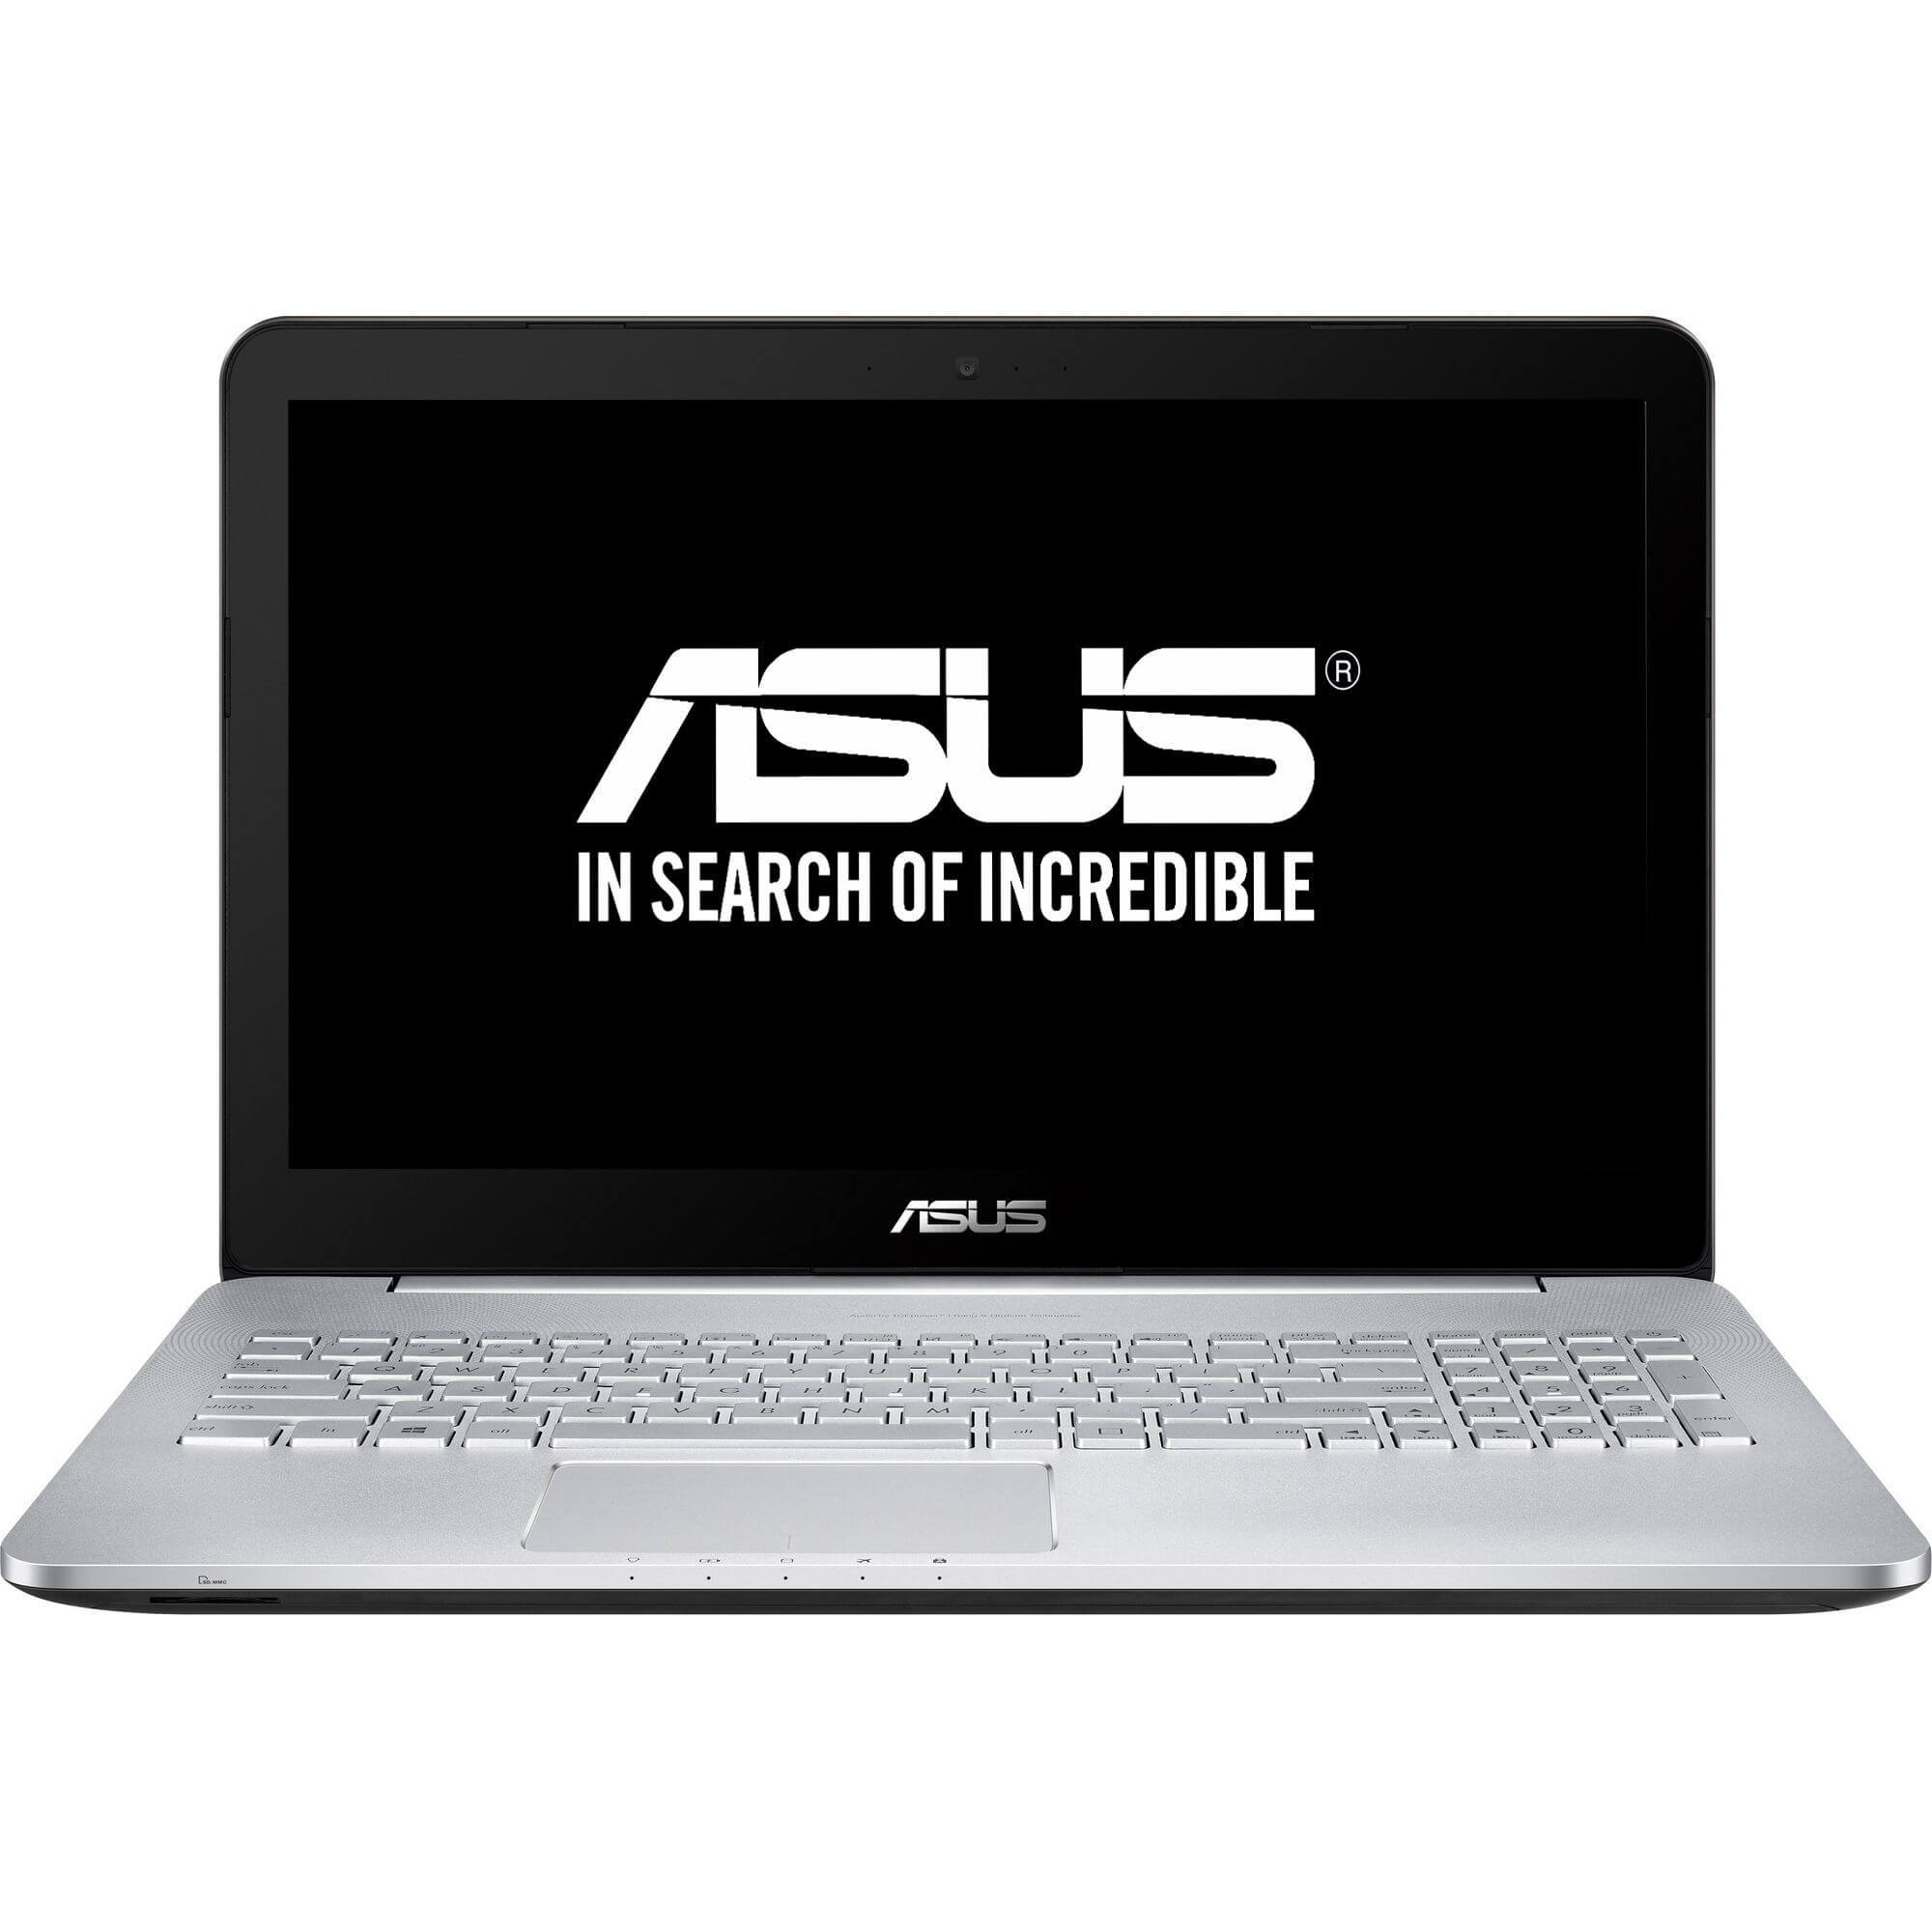  Laptop Asus N552VX-FY022D, Intel Core i5-6300HQ, 8GB DDR4, HDD 1TB, GeForce GTX 950M 4GB, FreeDos 